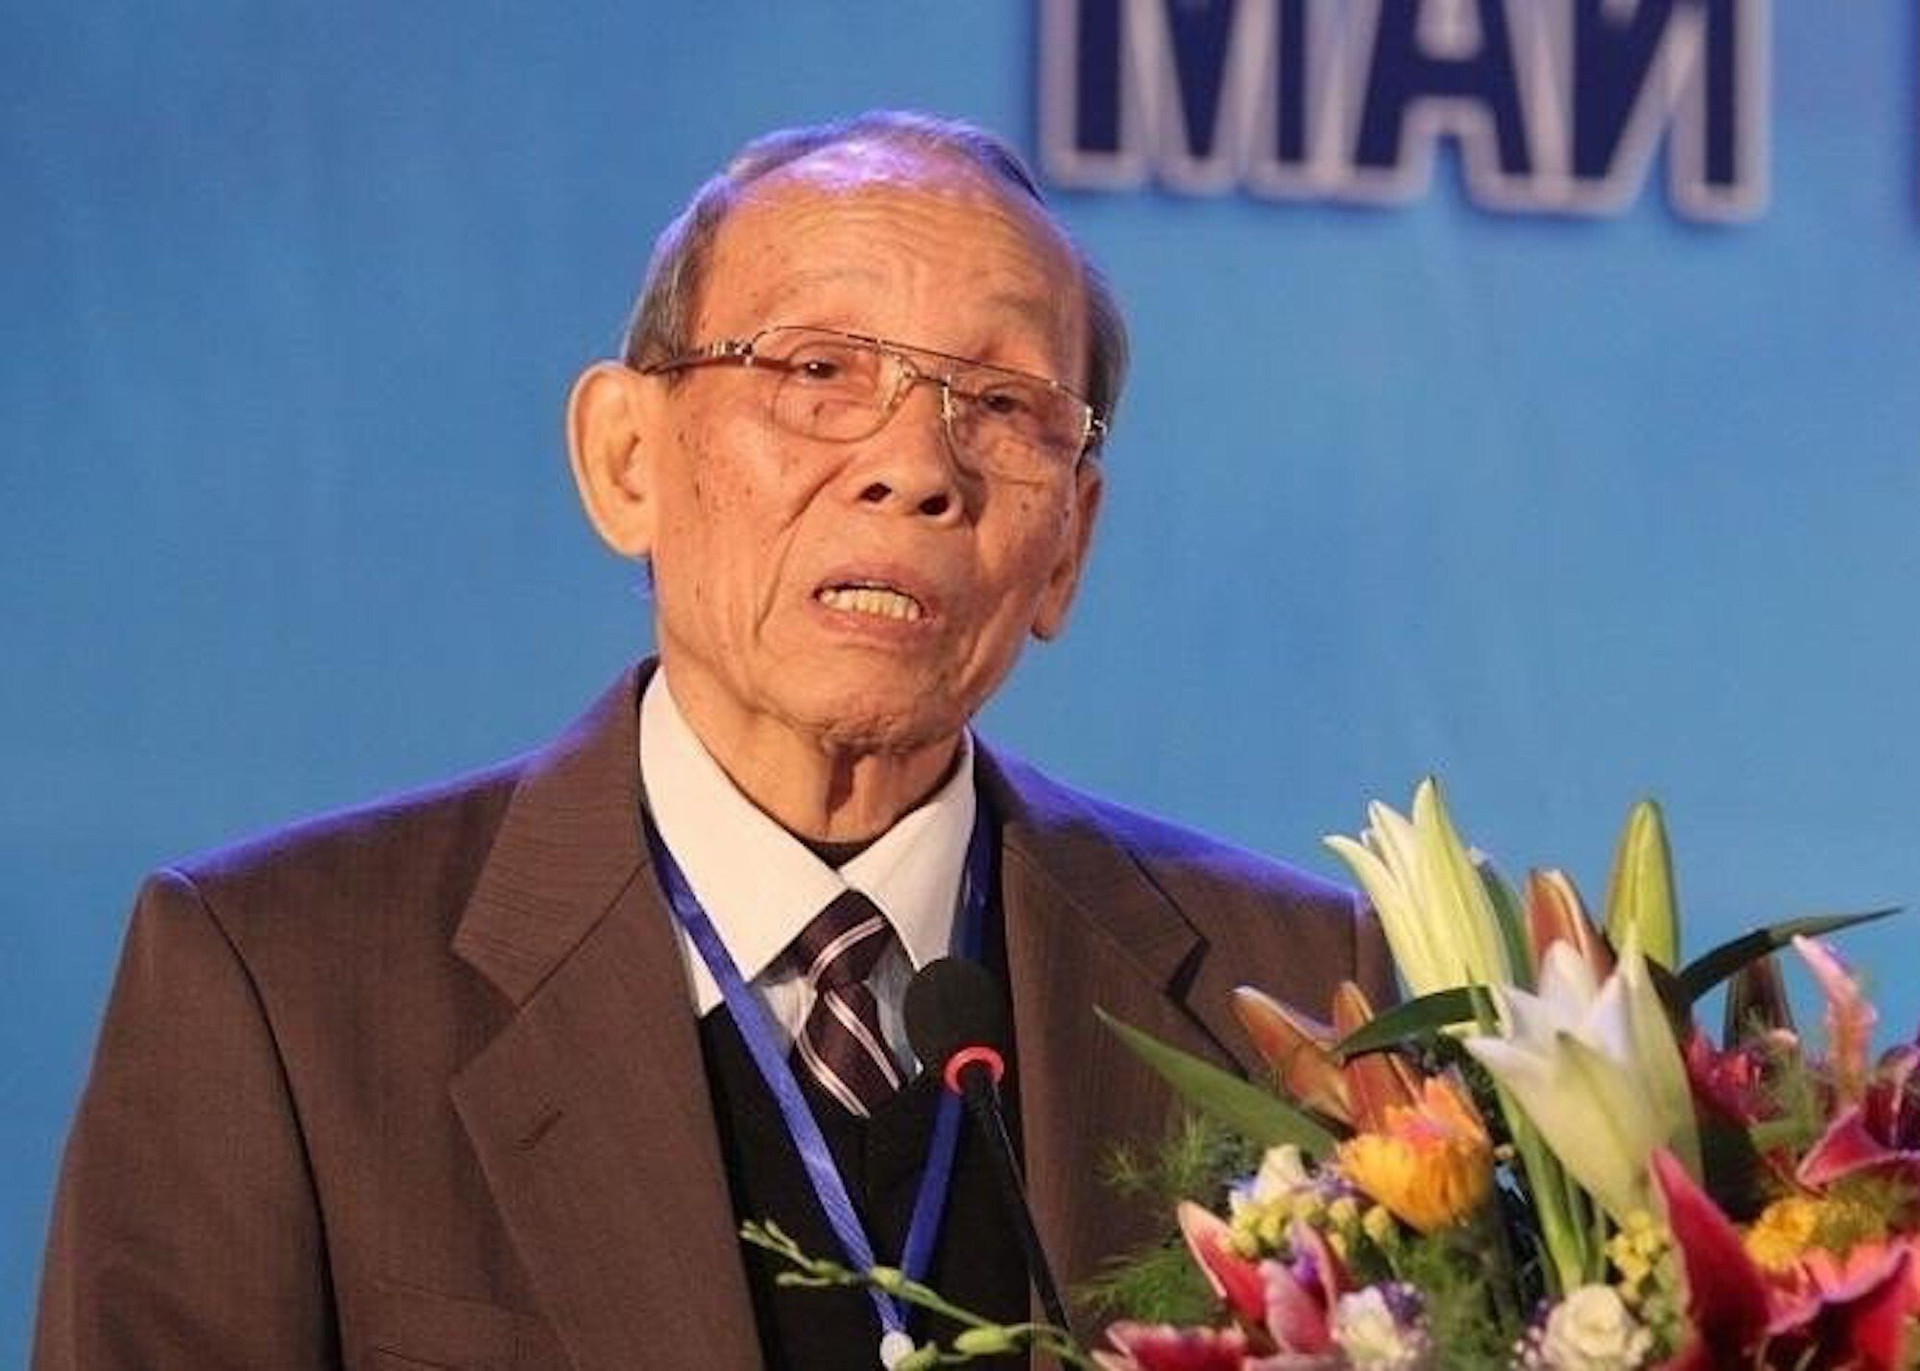 Giáo sư Trần Hồng Quân qua đời lúc 13h chiều 25/8 tại TP.HCM, hưởng thọ 86 tuổi.